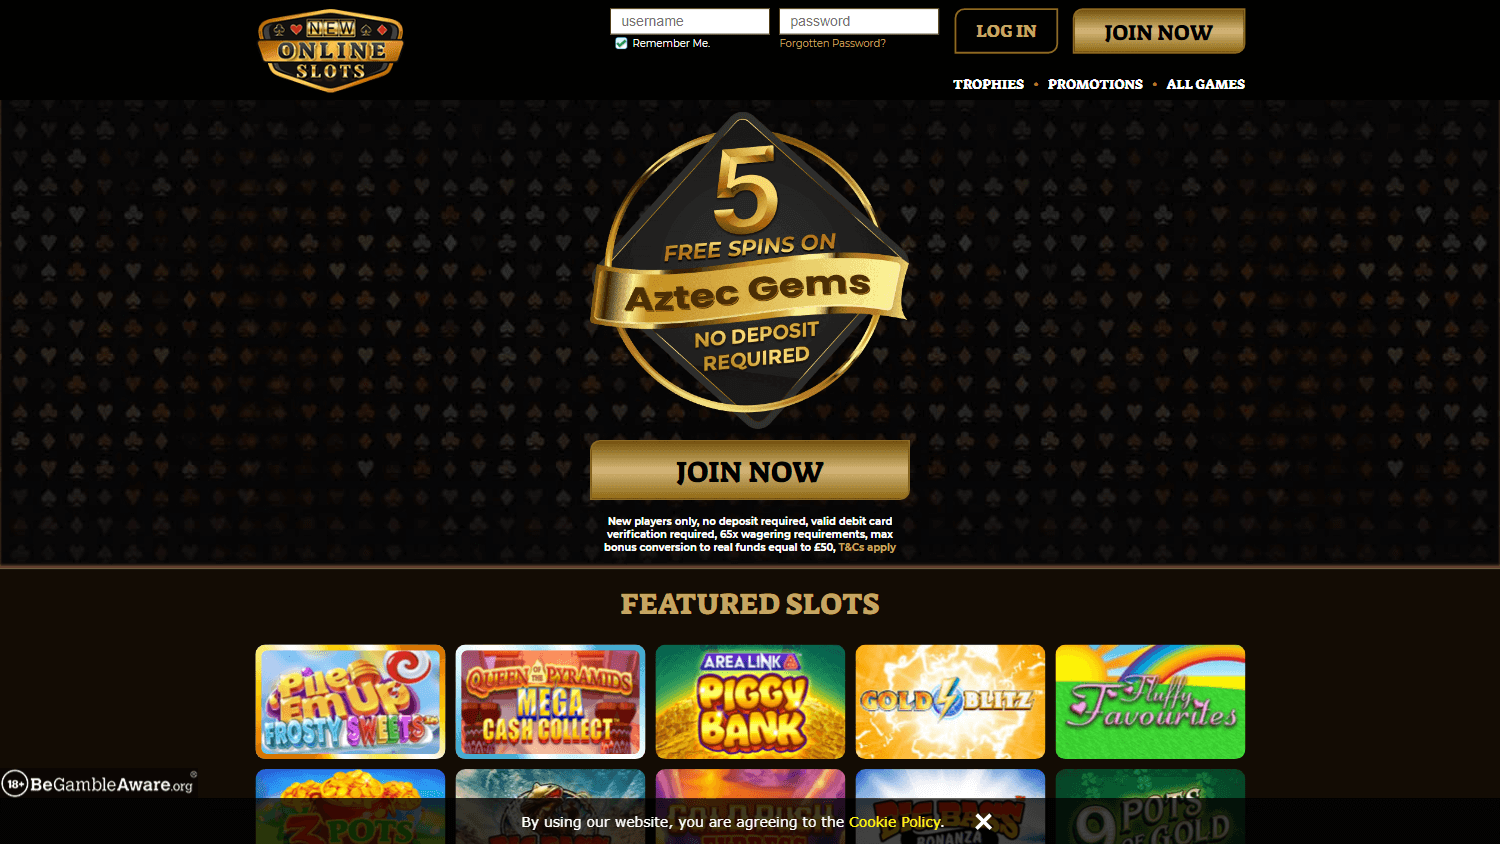 new_online_slots_casino_homepage_desktop